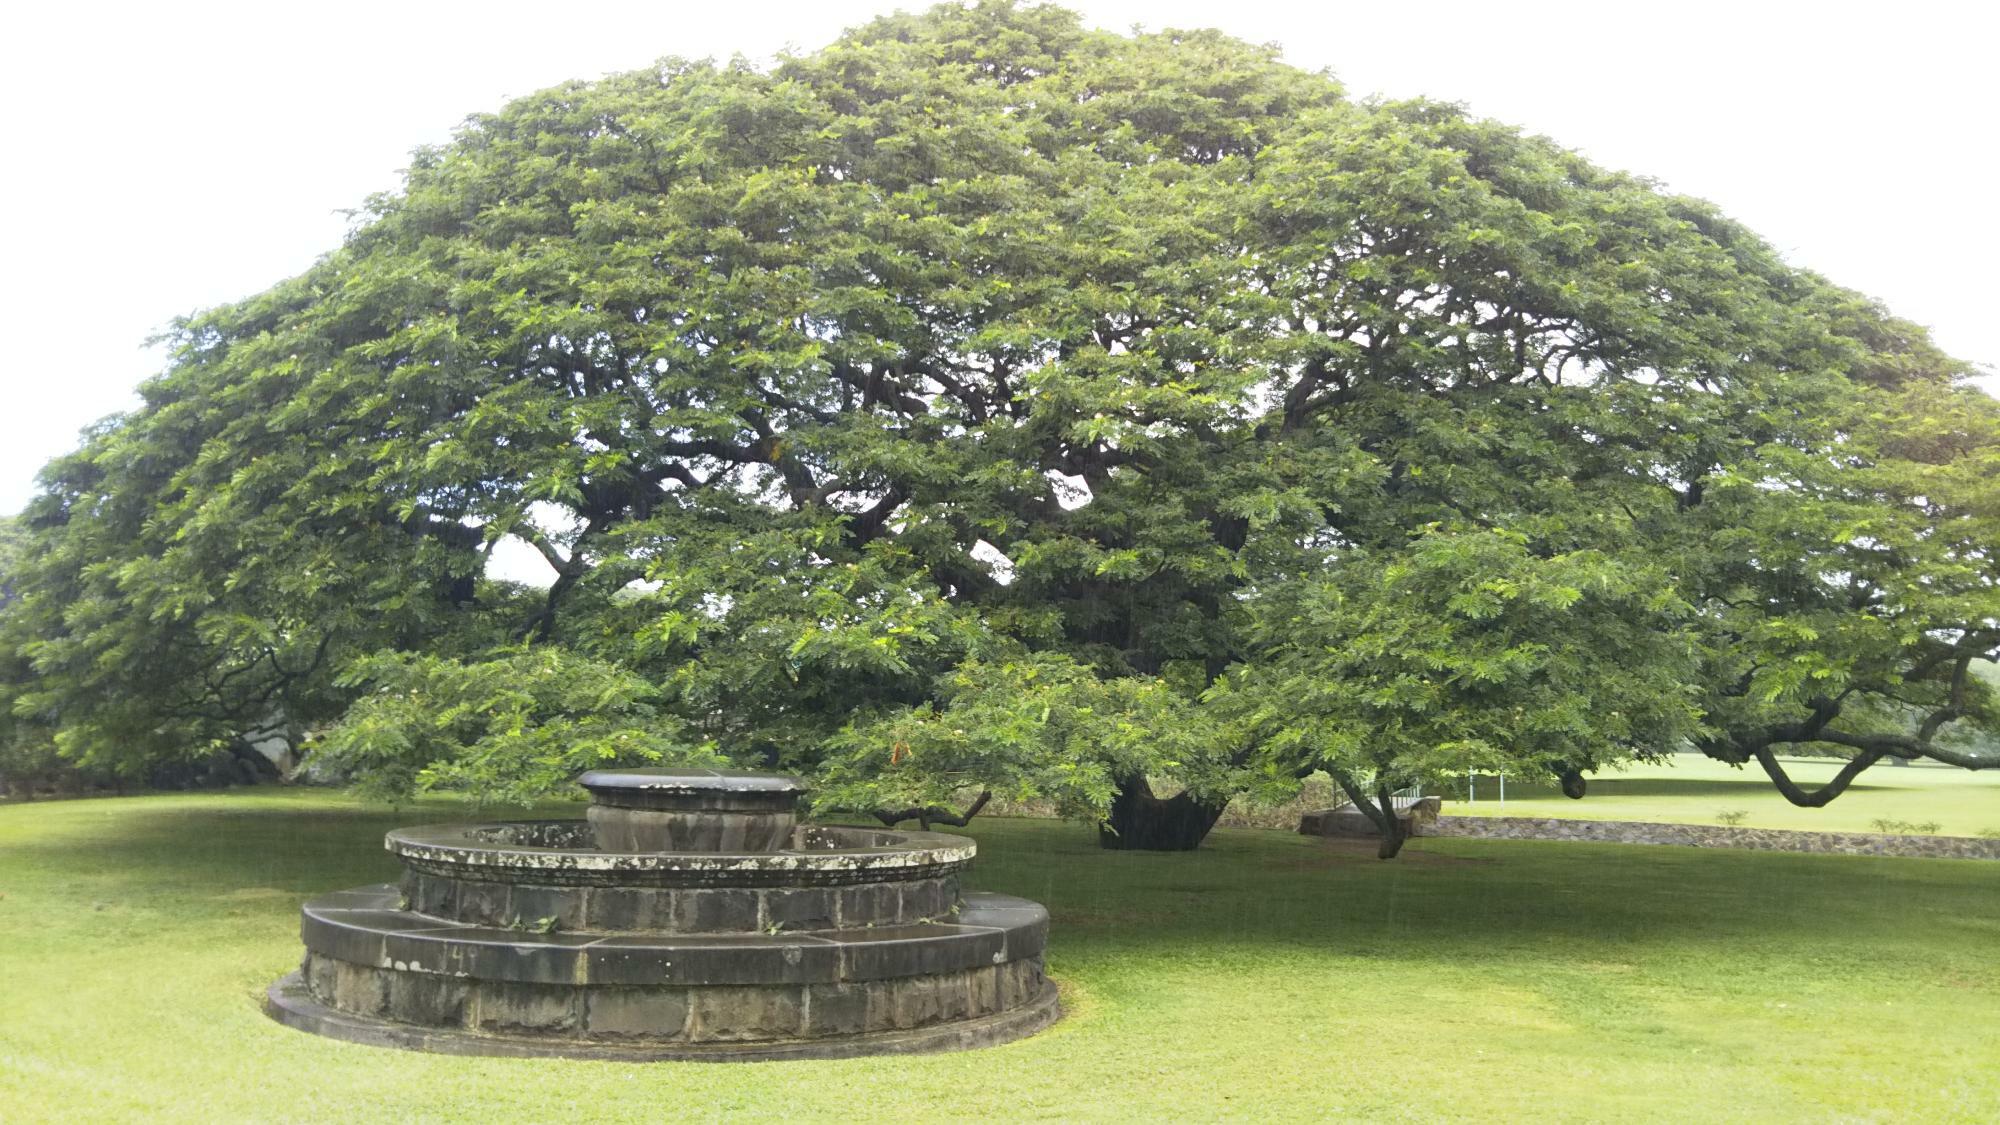 「日立 世界ふしぎ発見！」番組途中に流れる日立のCMに登場する、「この木なんの木」でお馴染みの日立の樹。ハワイ州オアフ島内「モアナルアガーデンパーク」内にて実物を確認できる（2017年筆者撮影）。